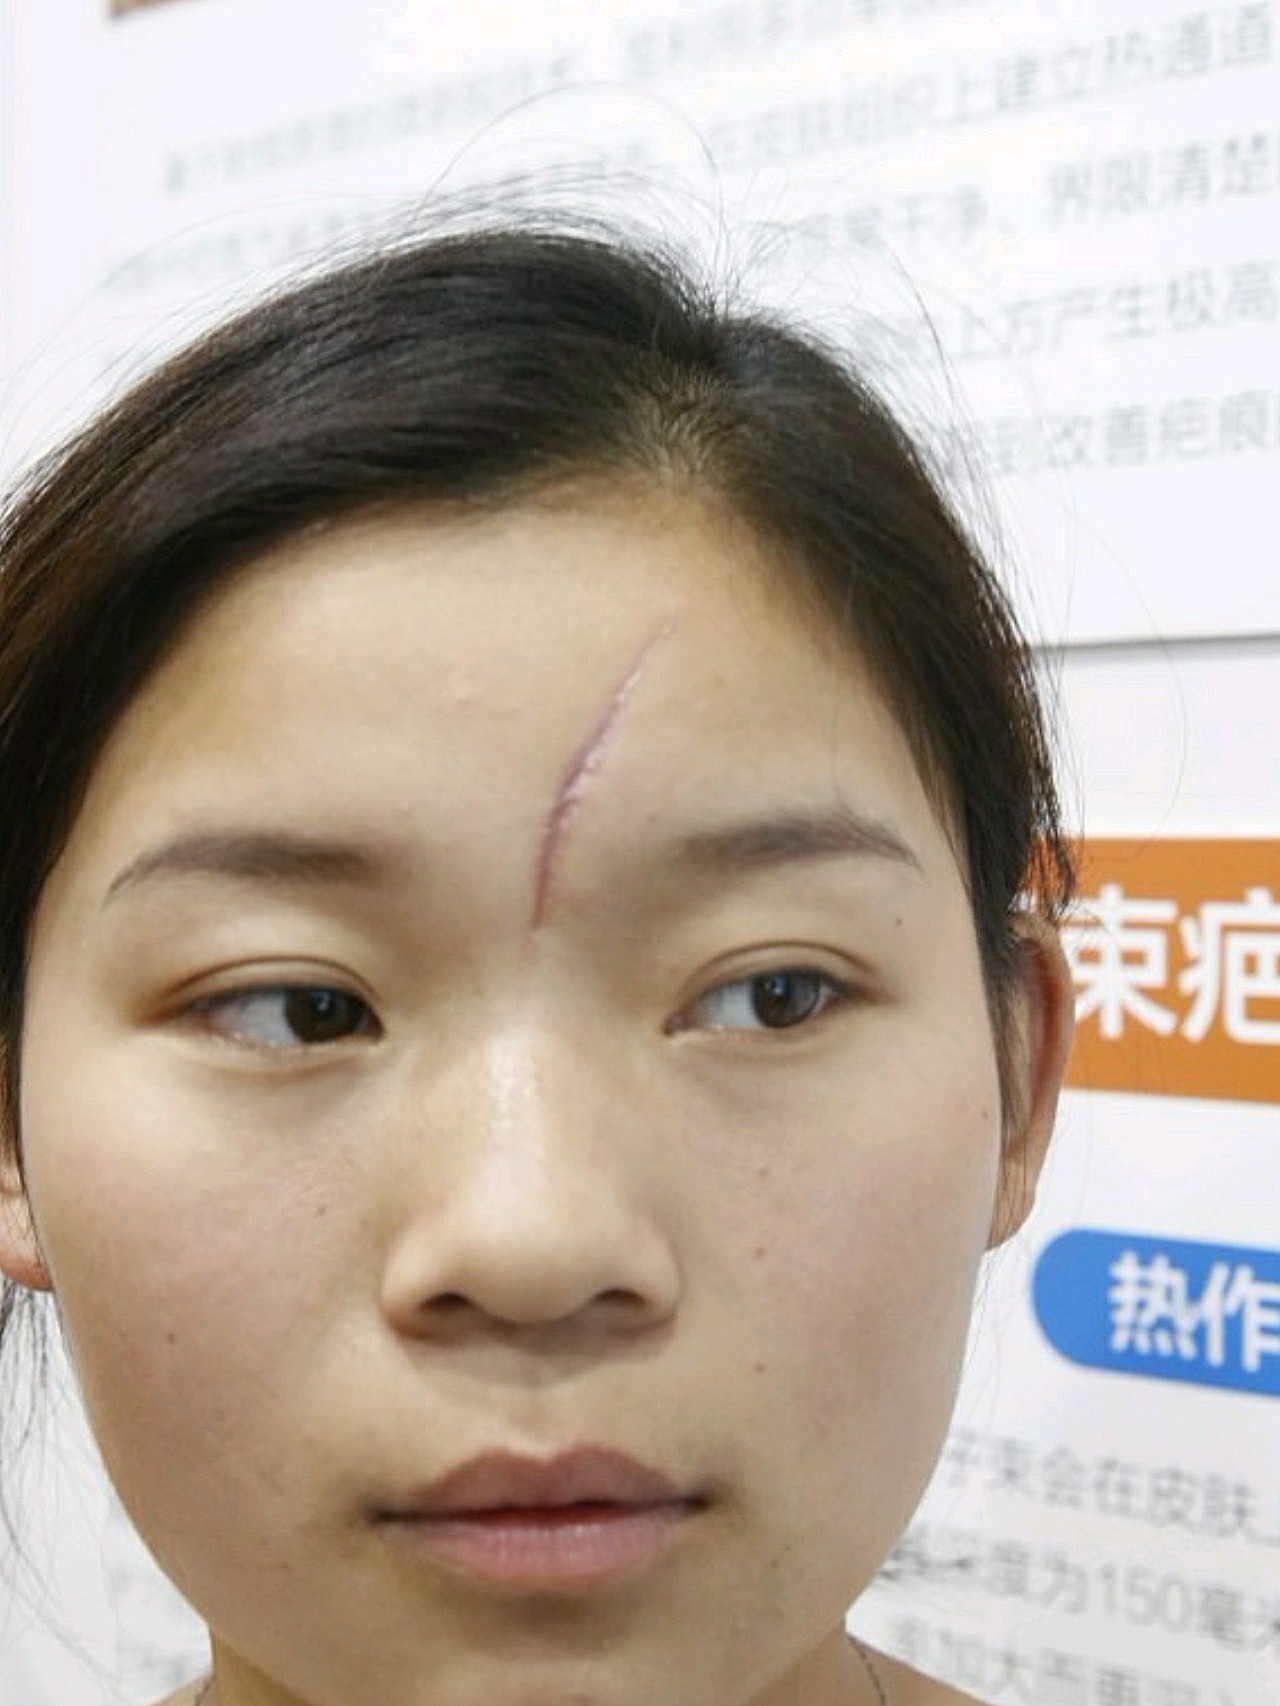 眉中间到额头一条凹陷疤痕横跨很长,严重影响着我的外